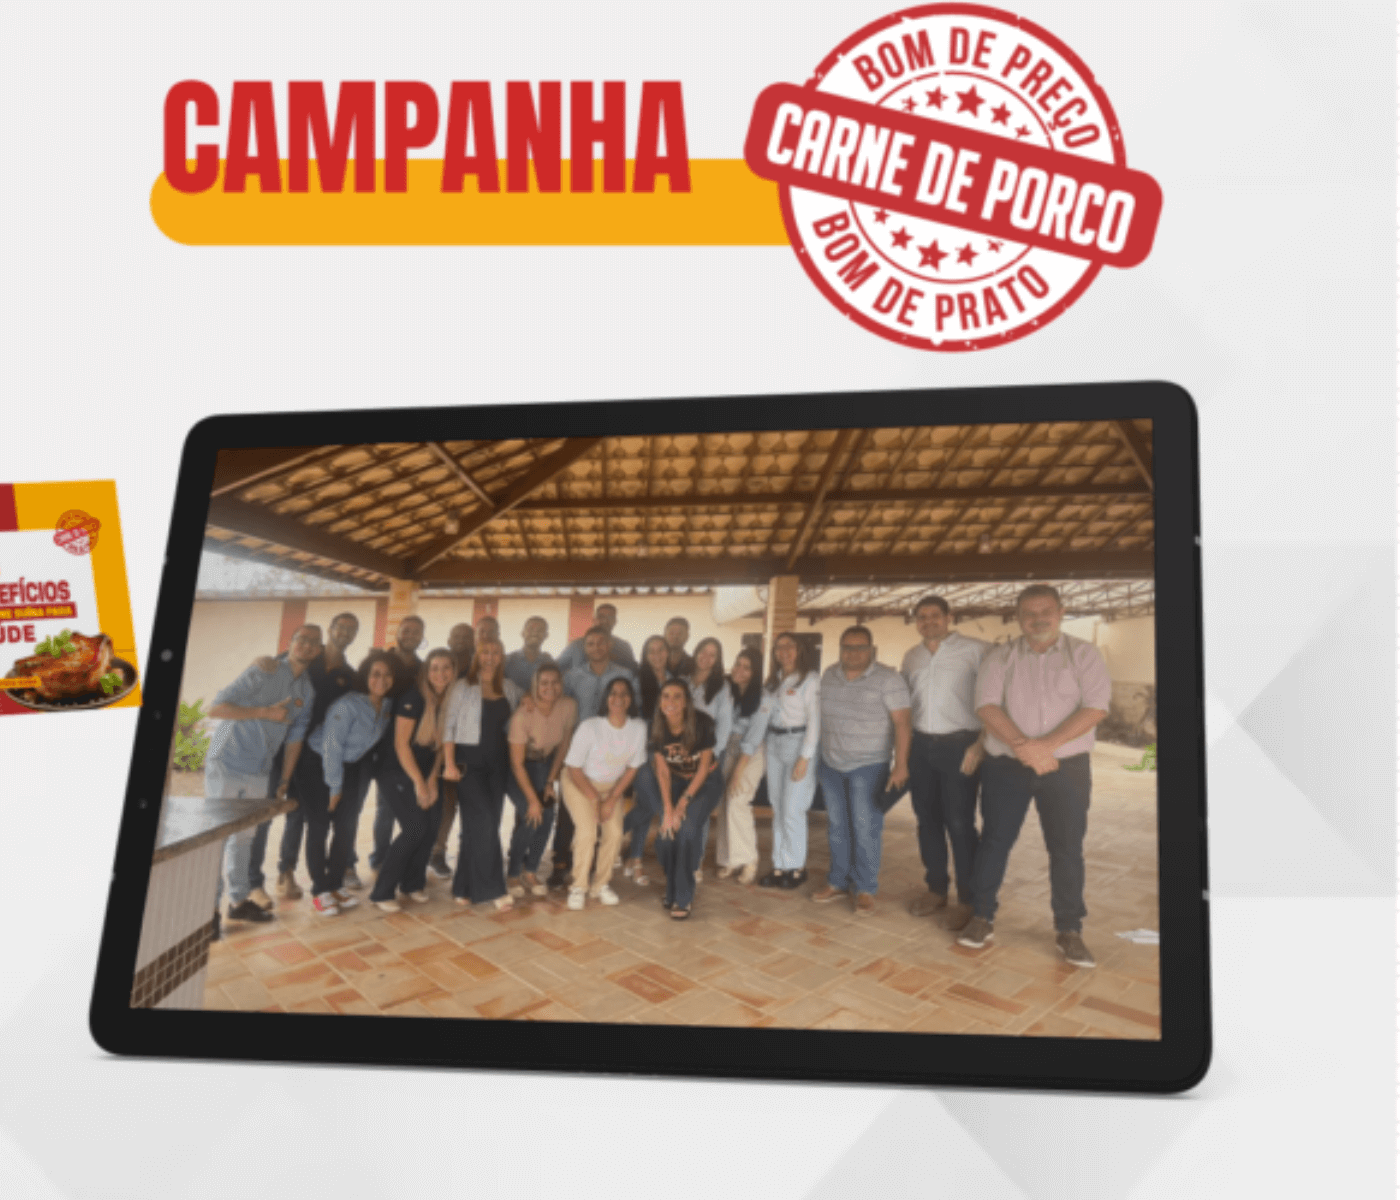 A campanha “Bom de preço, bom de prato” chega ao Nordeste! ABCS e ABS firmam parceria para aumento de consumo na Bahia